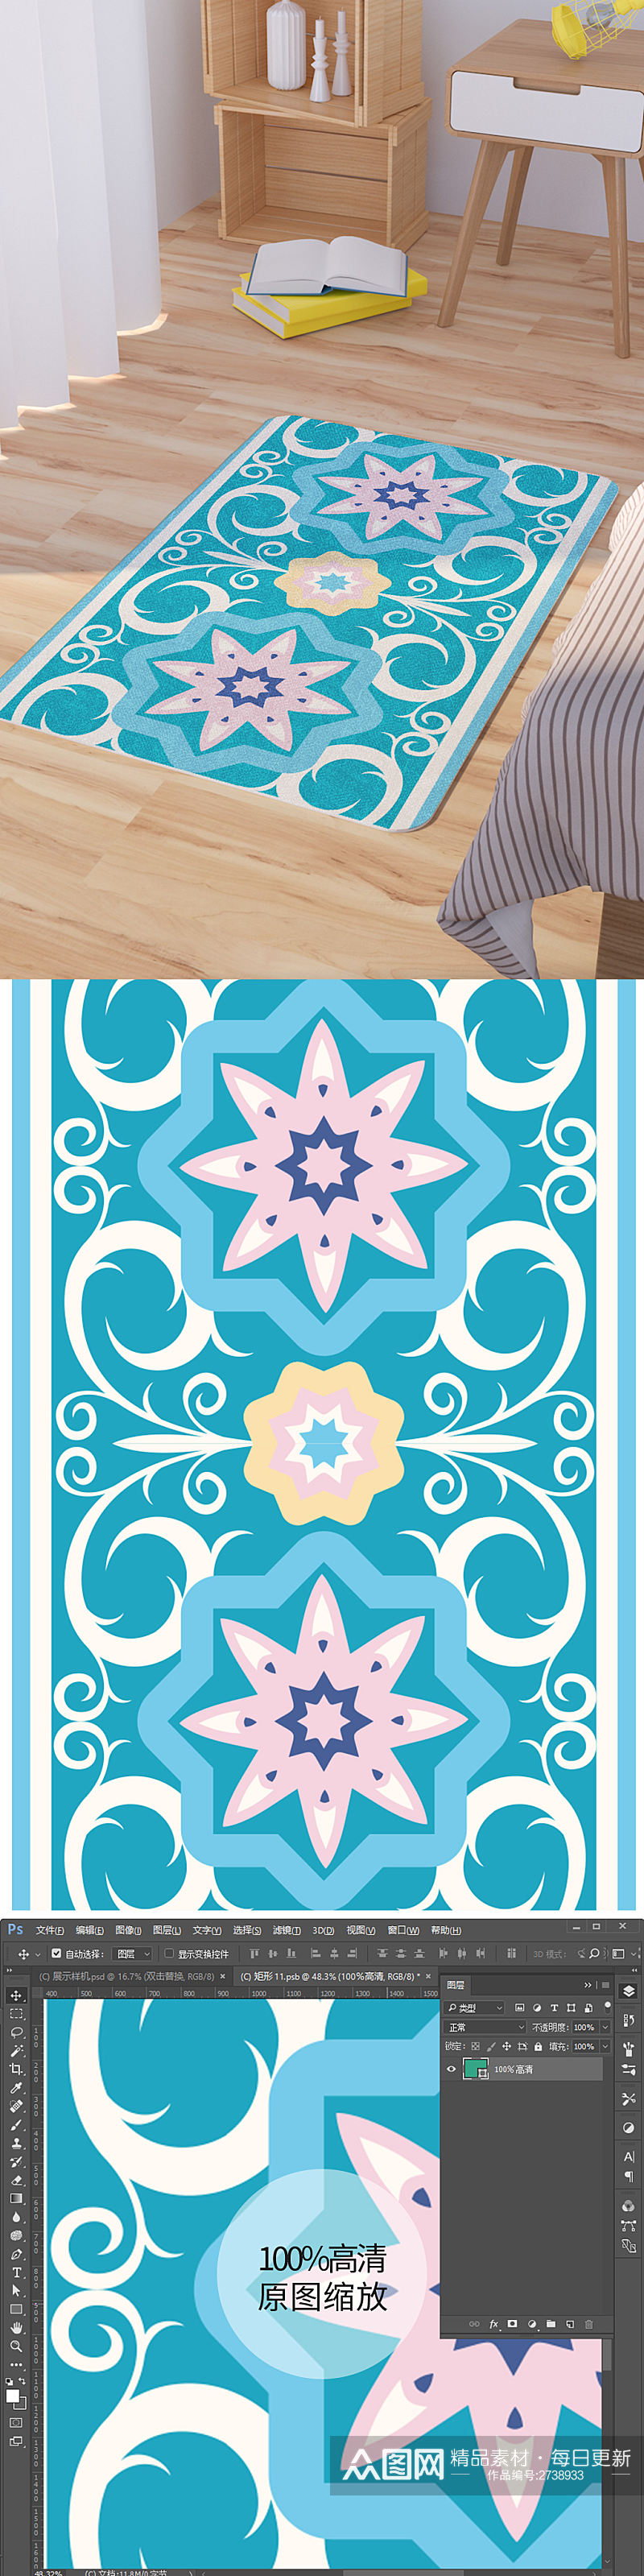 矢量蓝色欧式花纹脚垫地毯图案素材